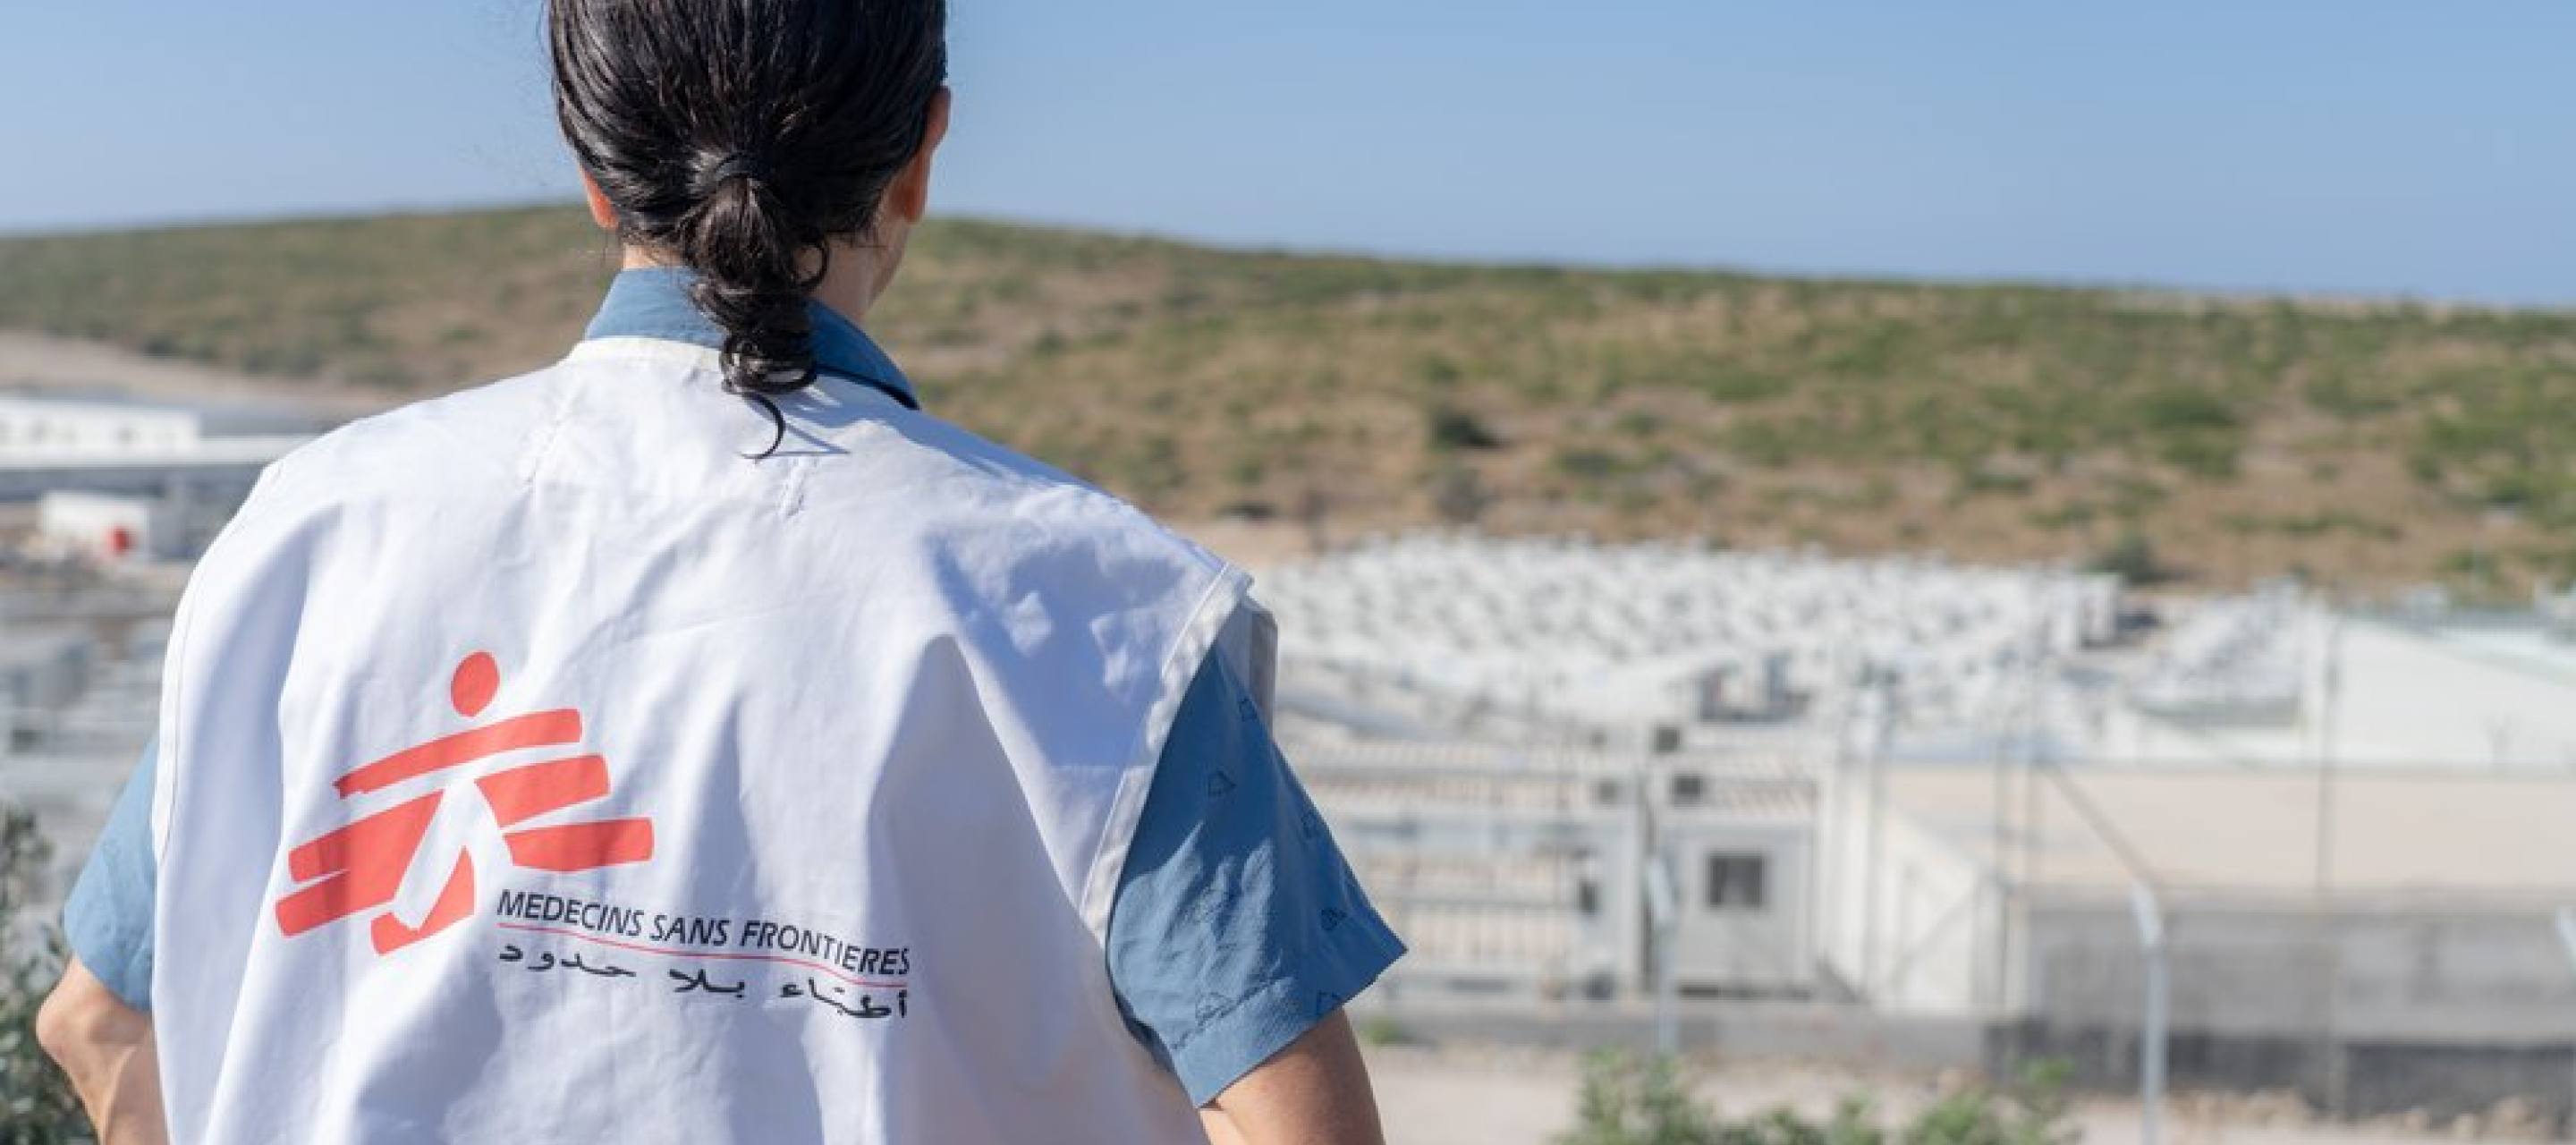 Eine Person von hinten fotografiert, mit einer Ärzte ohne Grenzen Weste die auf ein entferntes Camp schaut